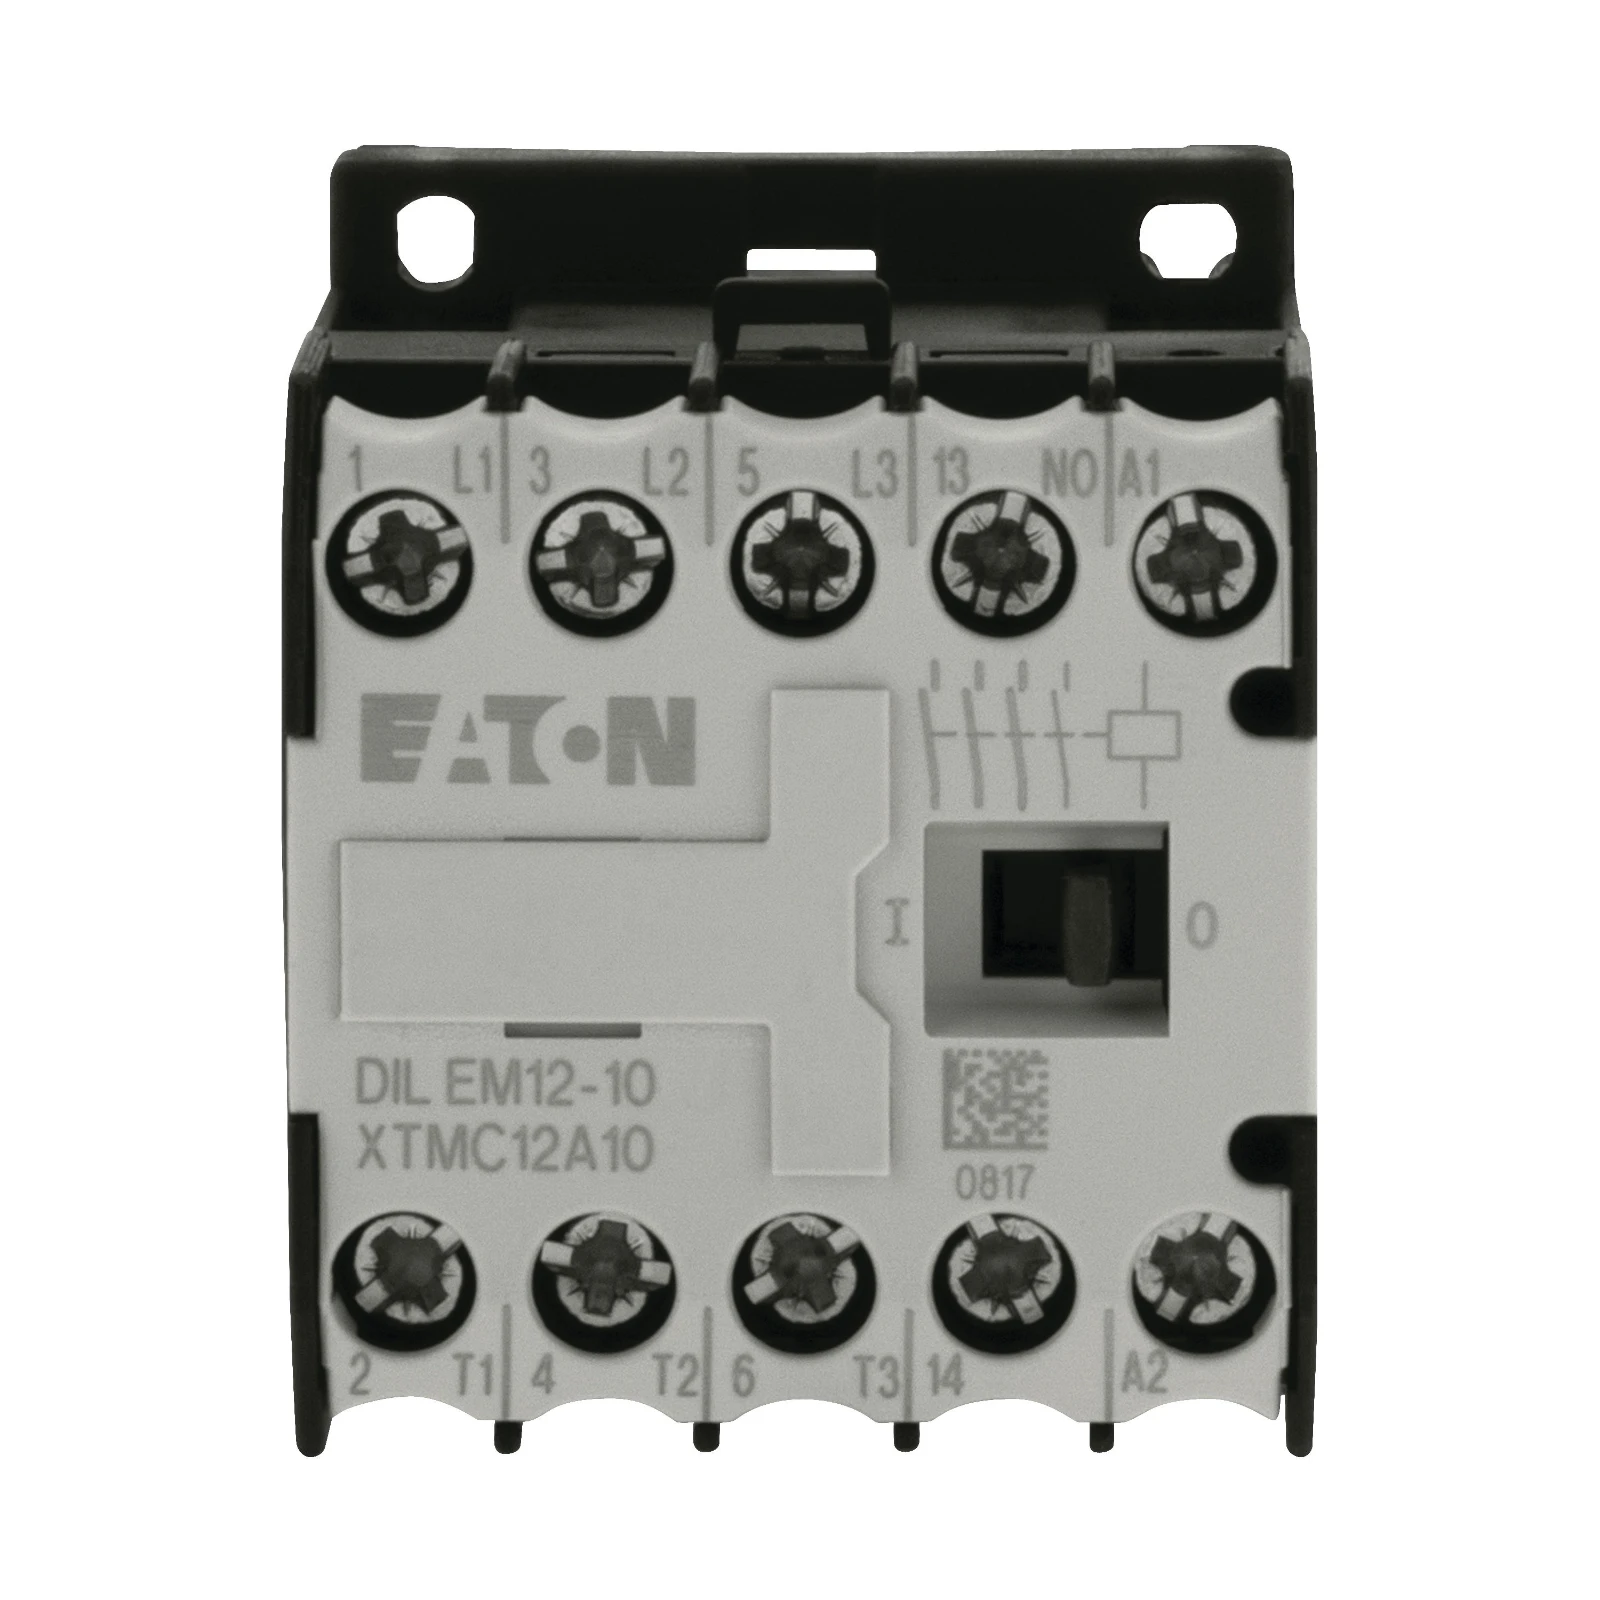 2074119 - Eaton DILEM12-10-G(24VDC)